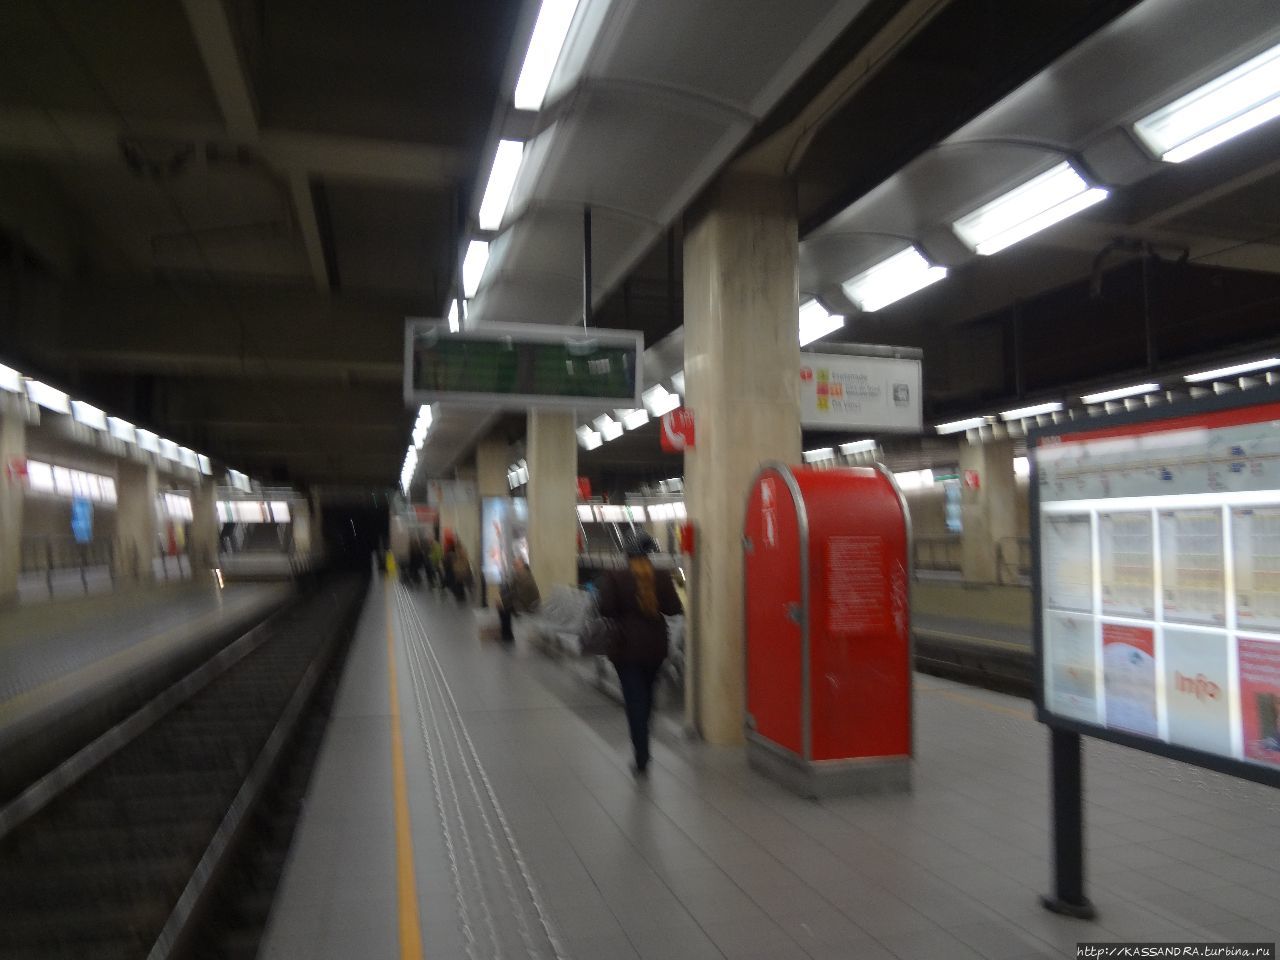 Посмотреть станции метро Брюссель, Бельгия